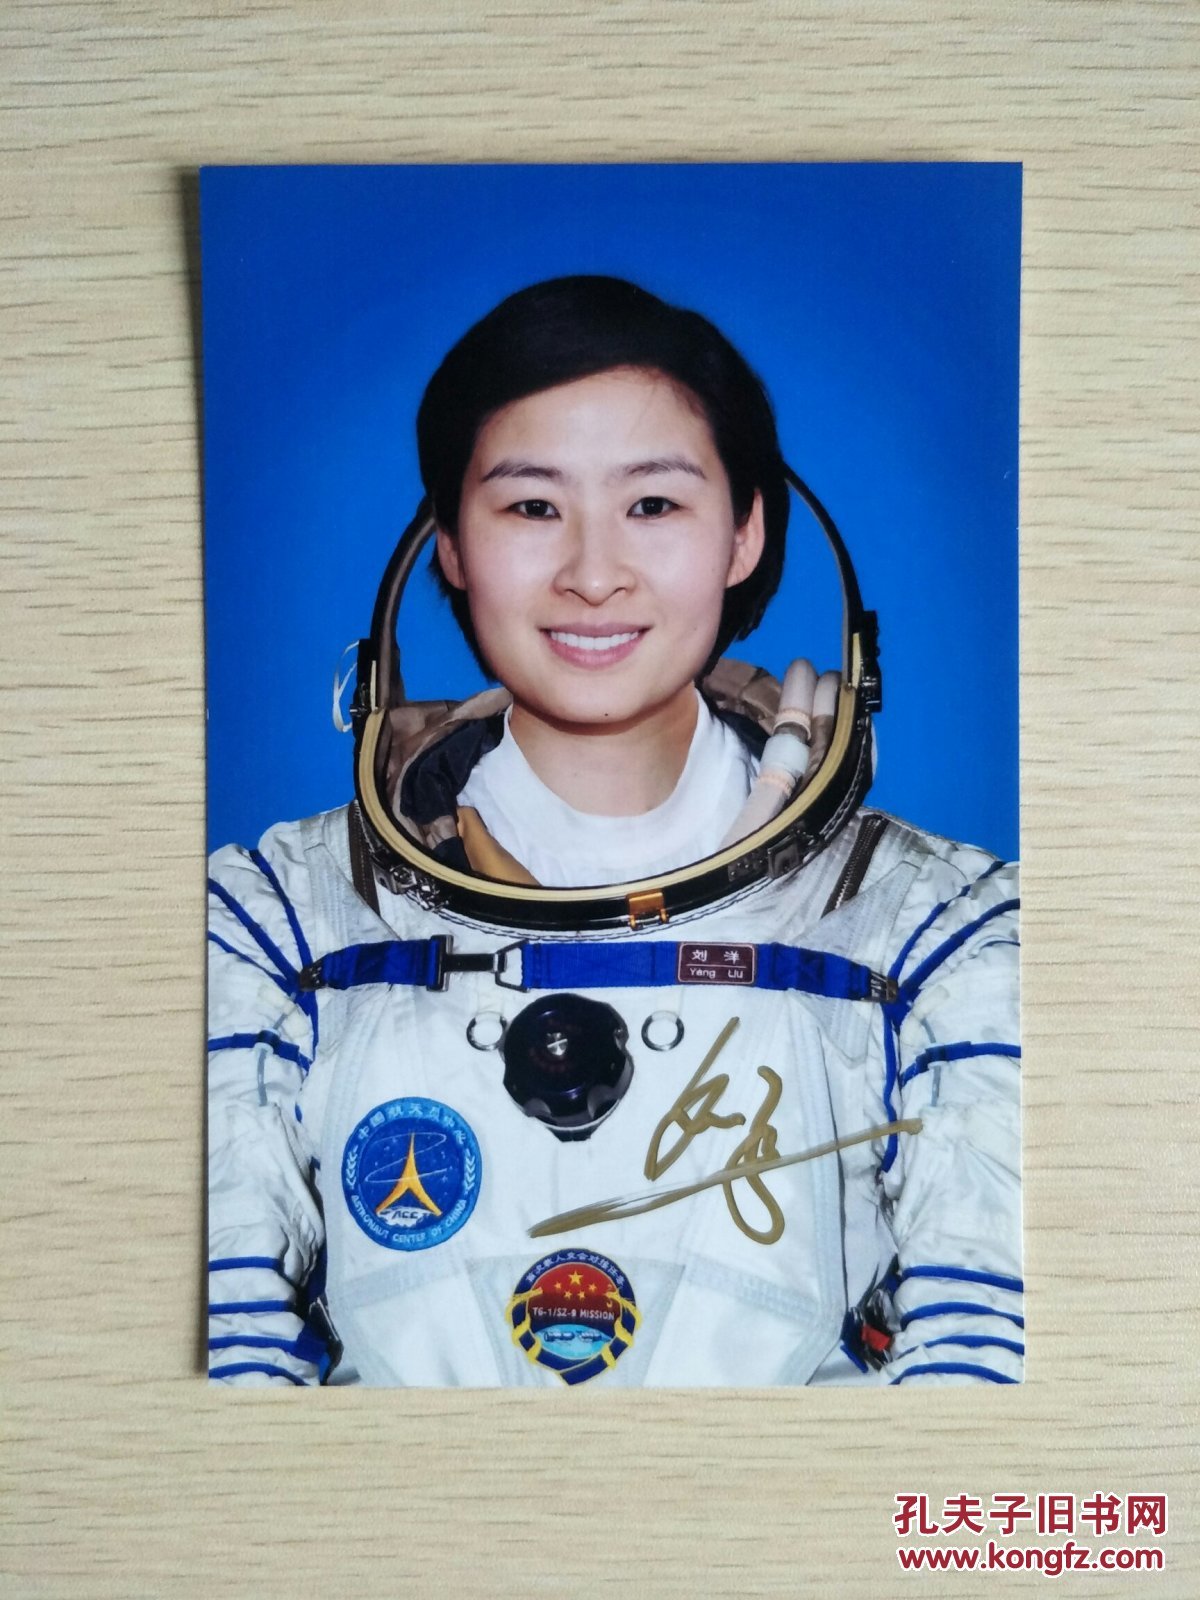 航天员刘洋签名照片一张,六寸照片